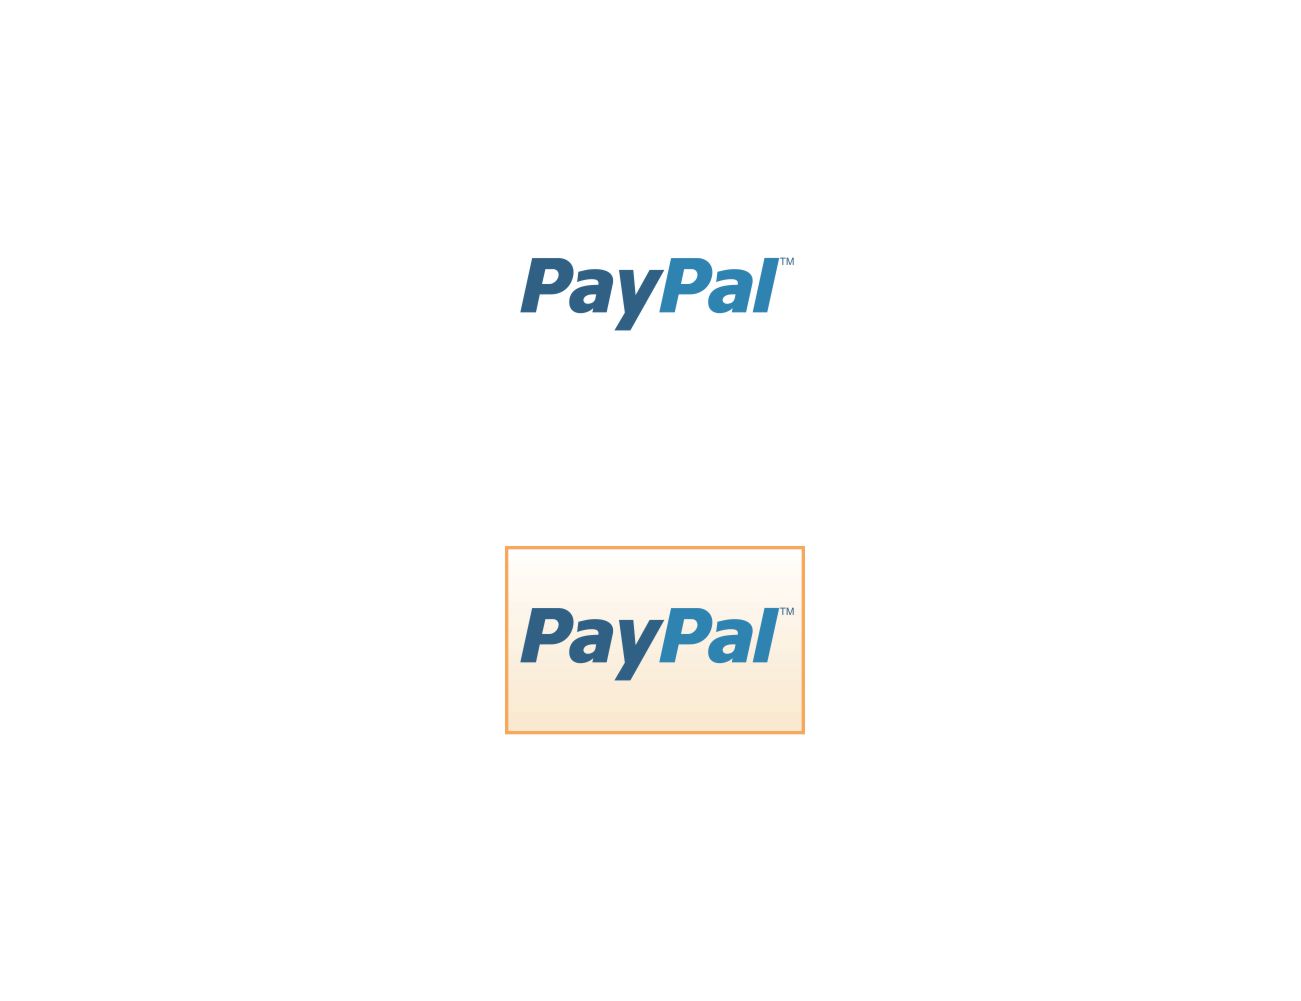 paypal logo download